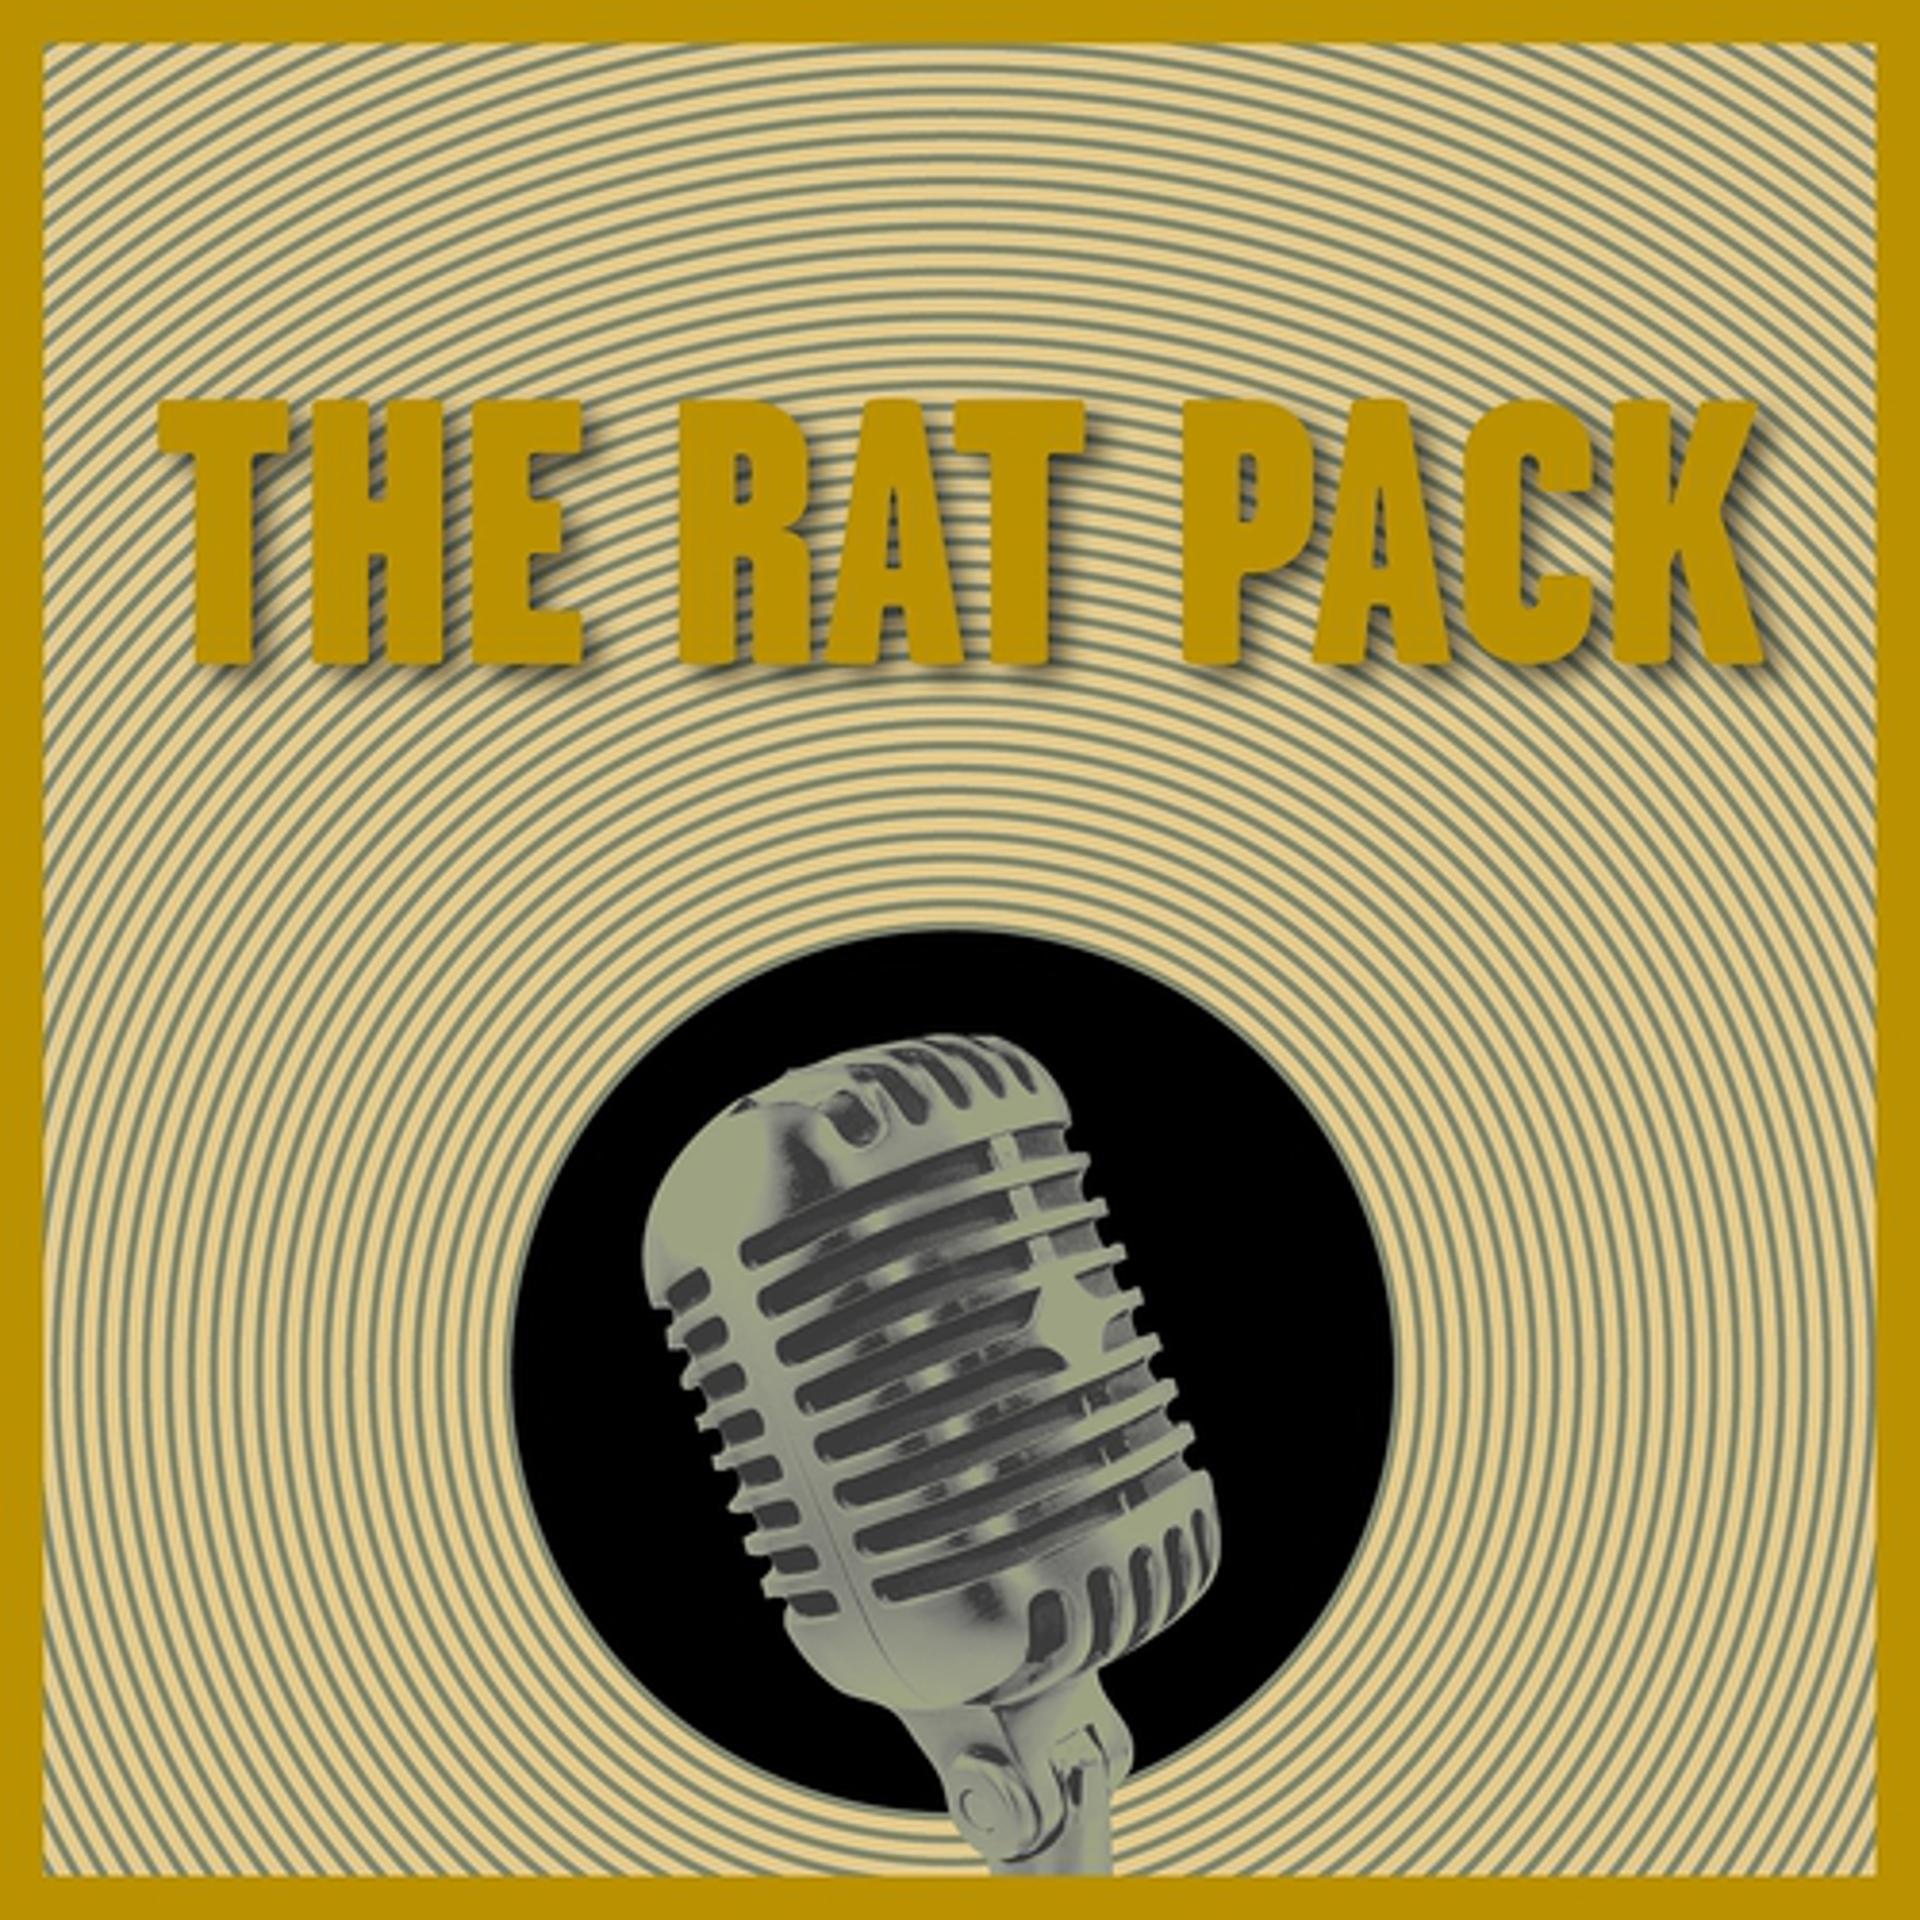 Постер альбома The Rat Pack